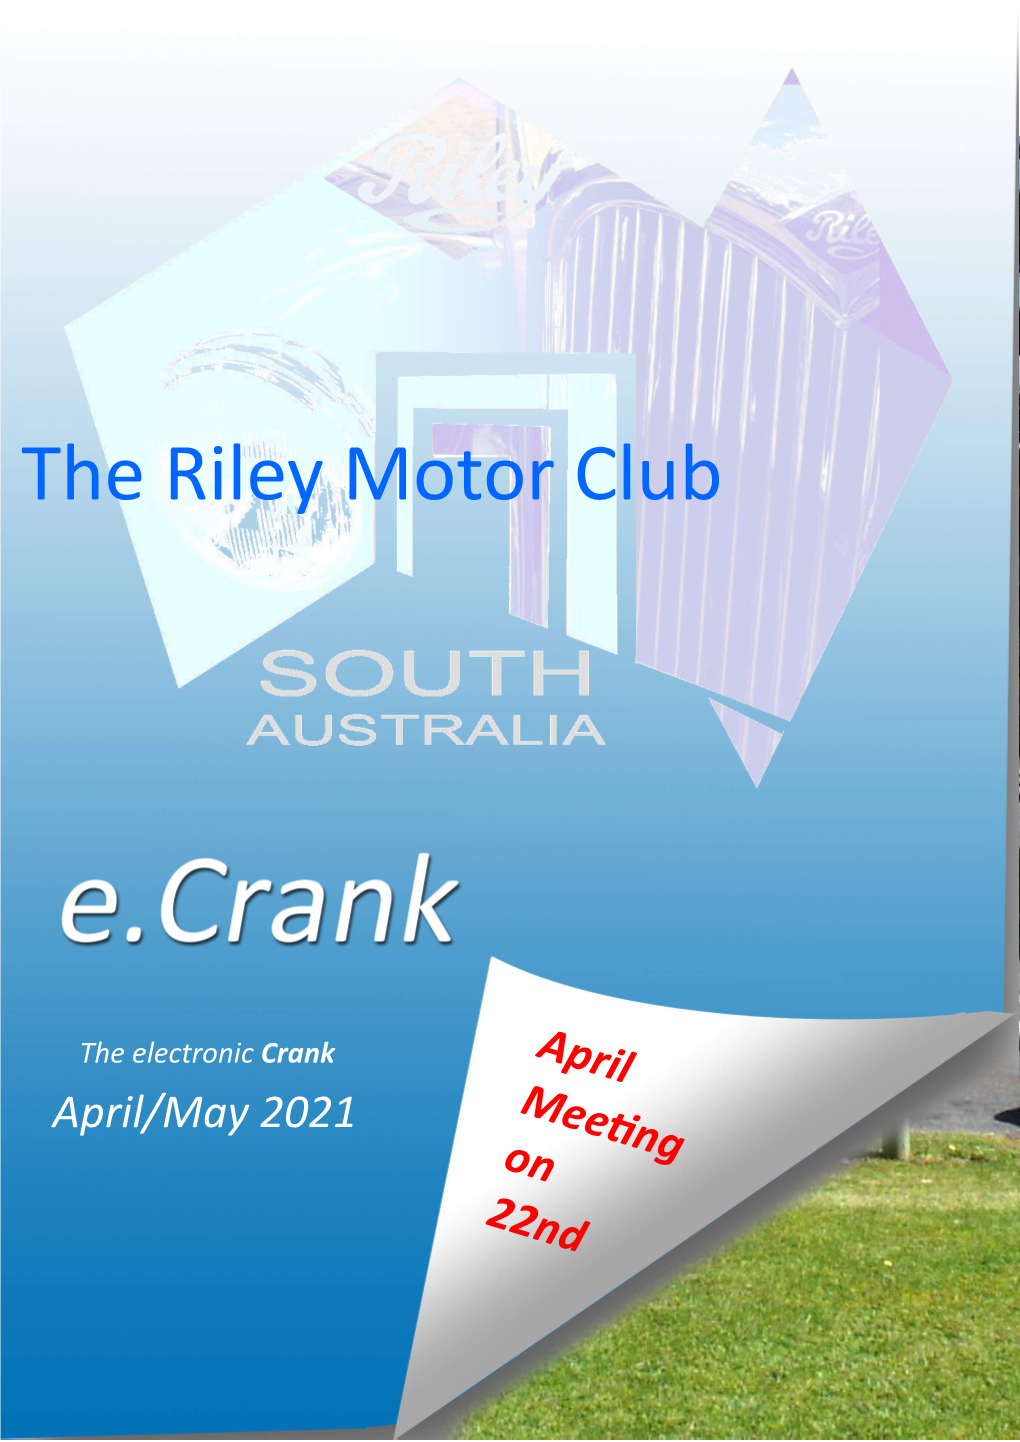 The Riley Motor Club